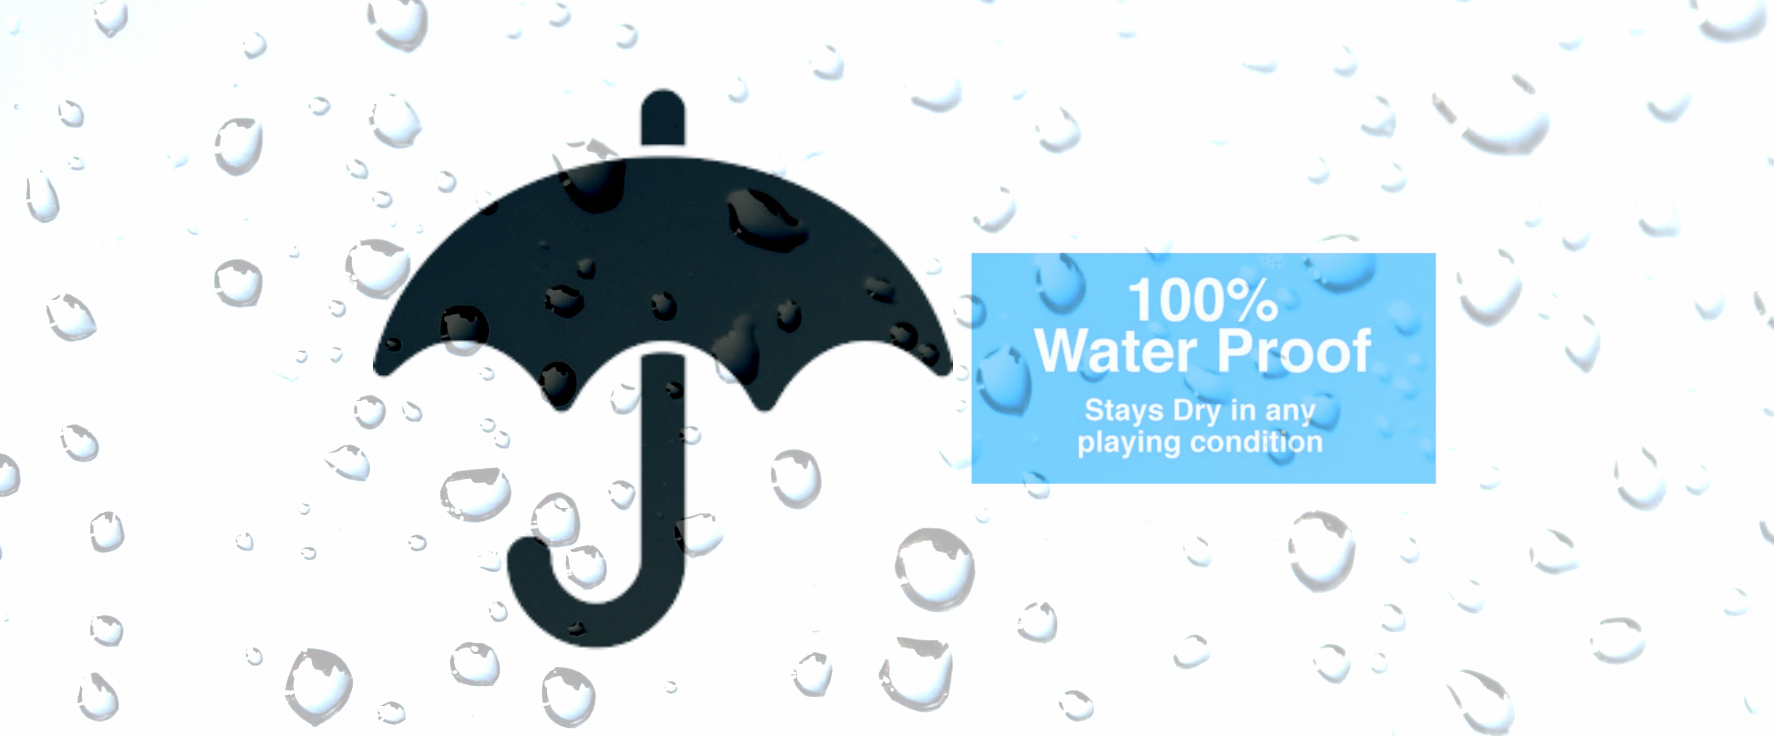 waterproof1.0.jpg